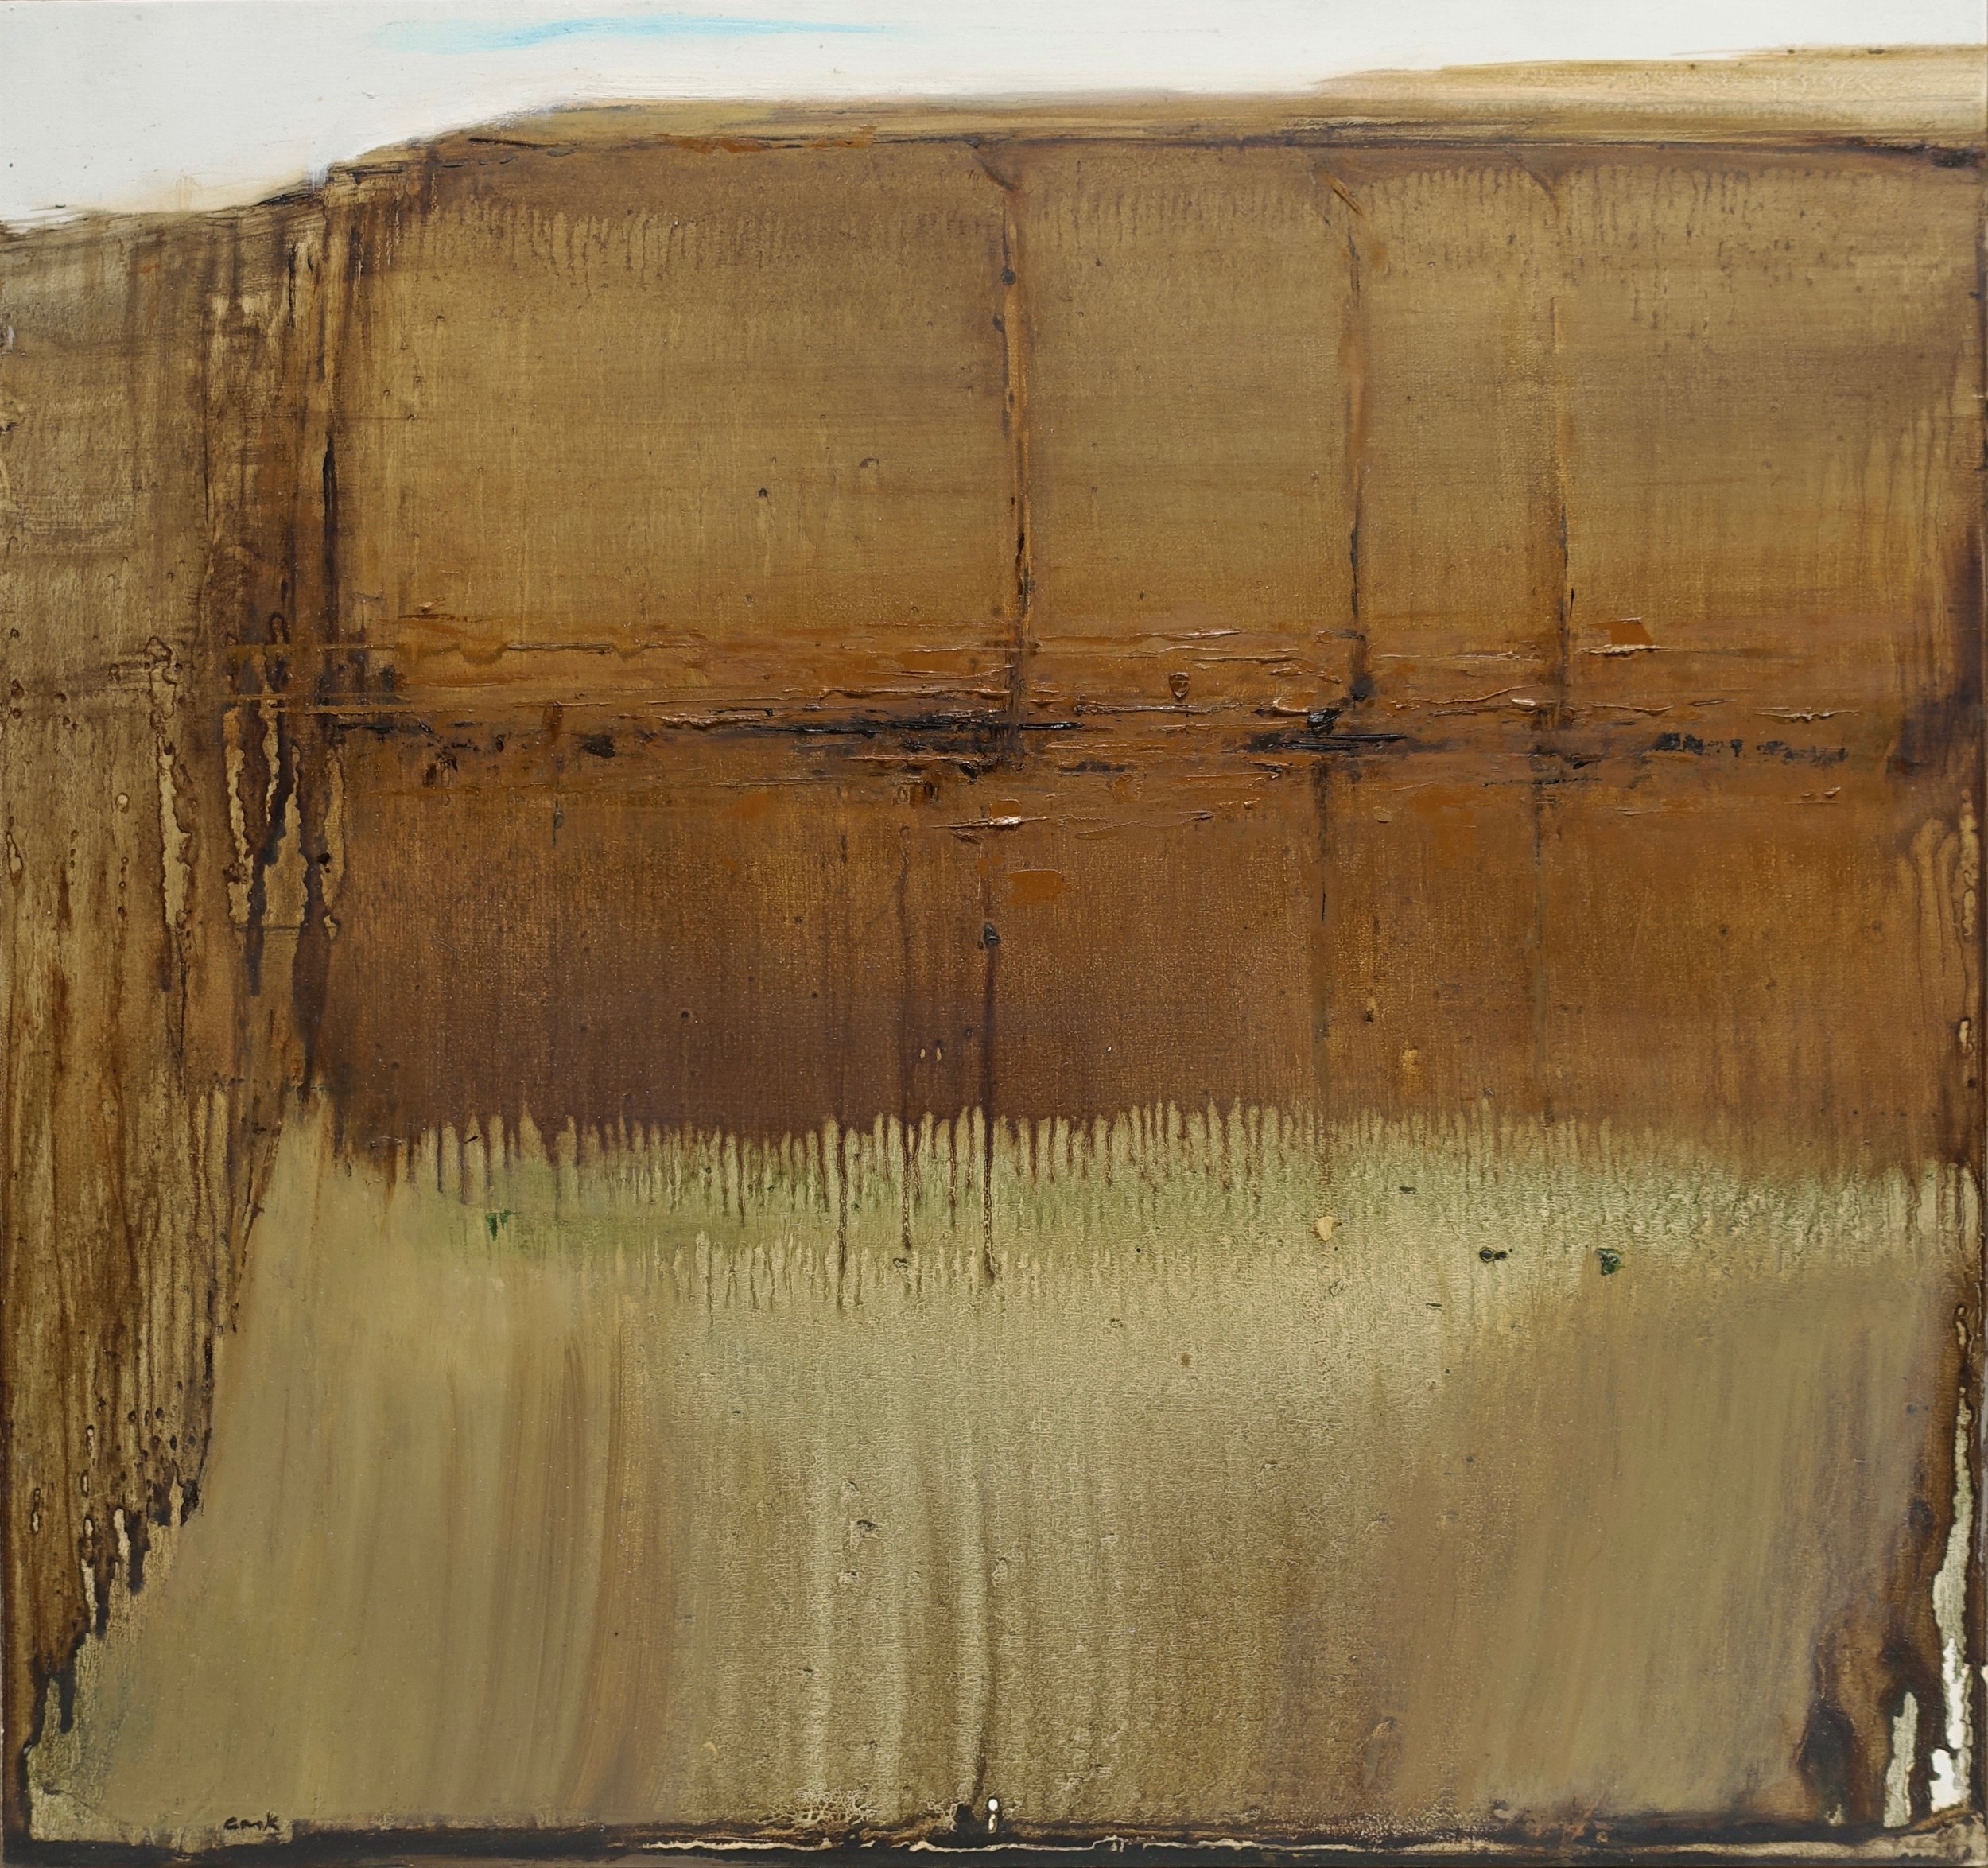   Sienna   oil on panel  16 x 17”  2023     